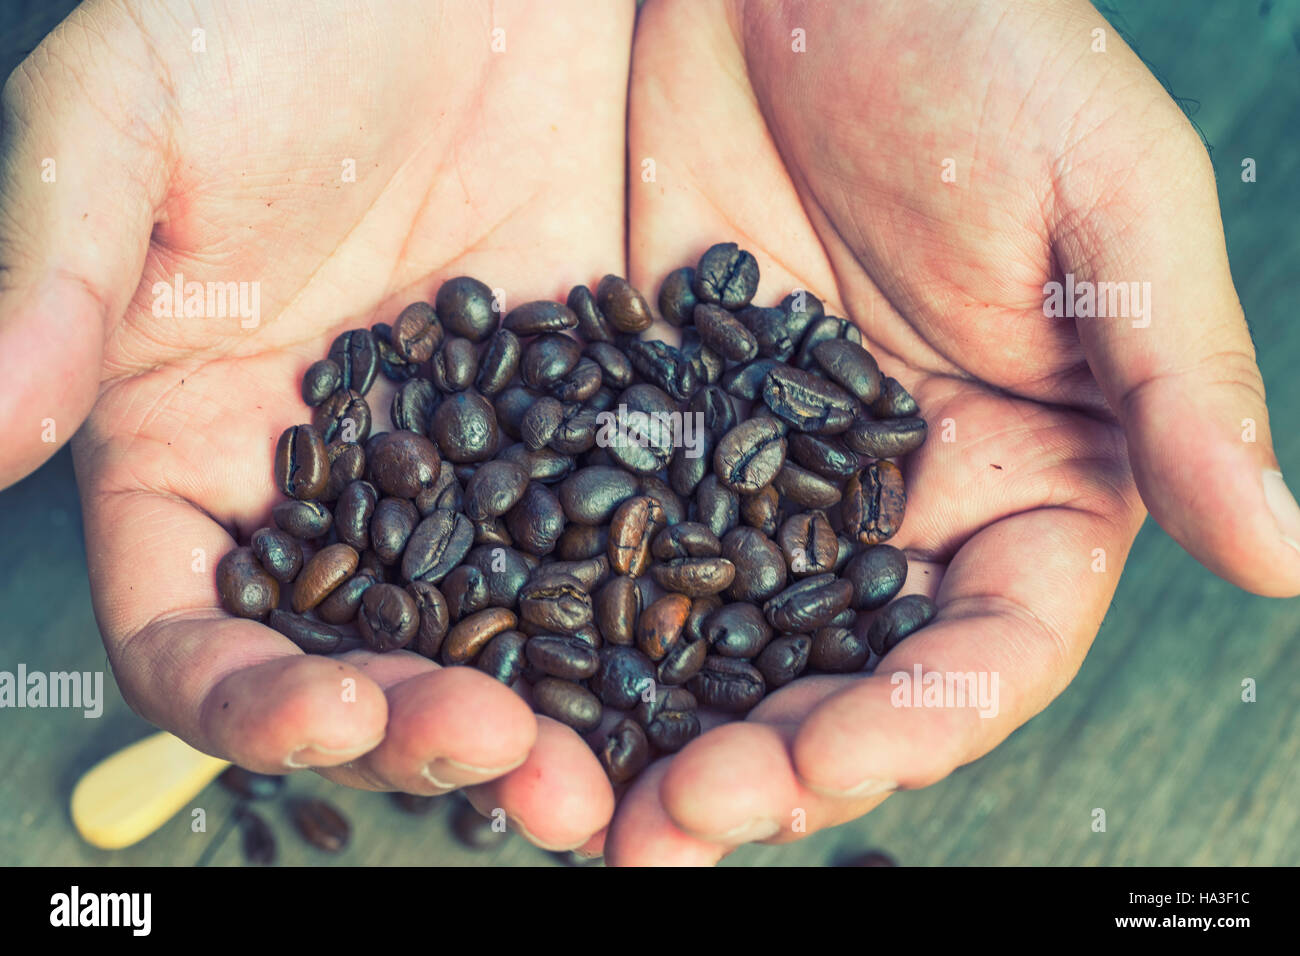 Abstract blur coffee bean a été sélectionné sur la main avec filtre vintage - peut utiliser pour afficher ou un montage sur produit Banque D'Images